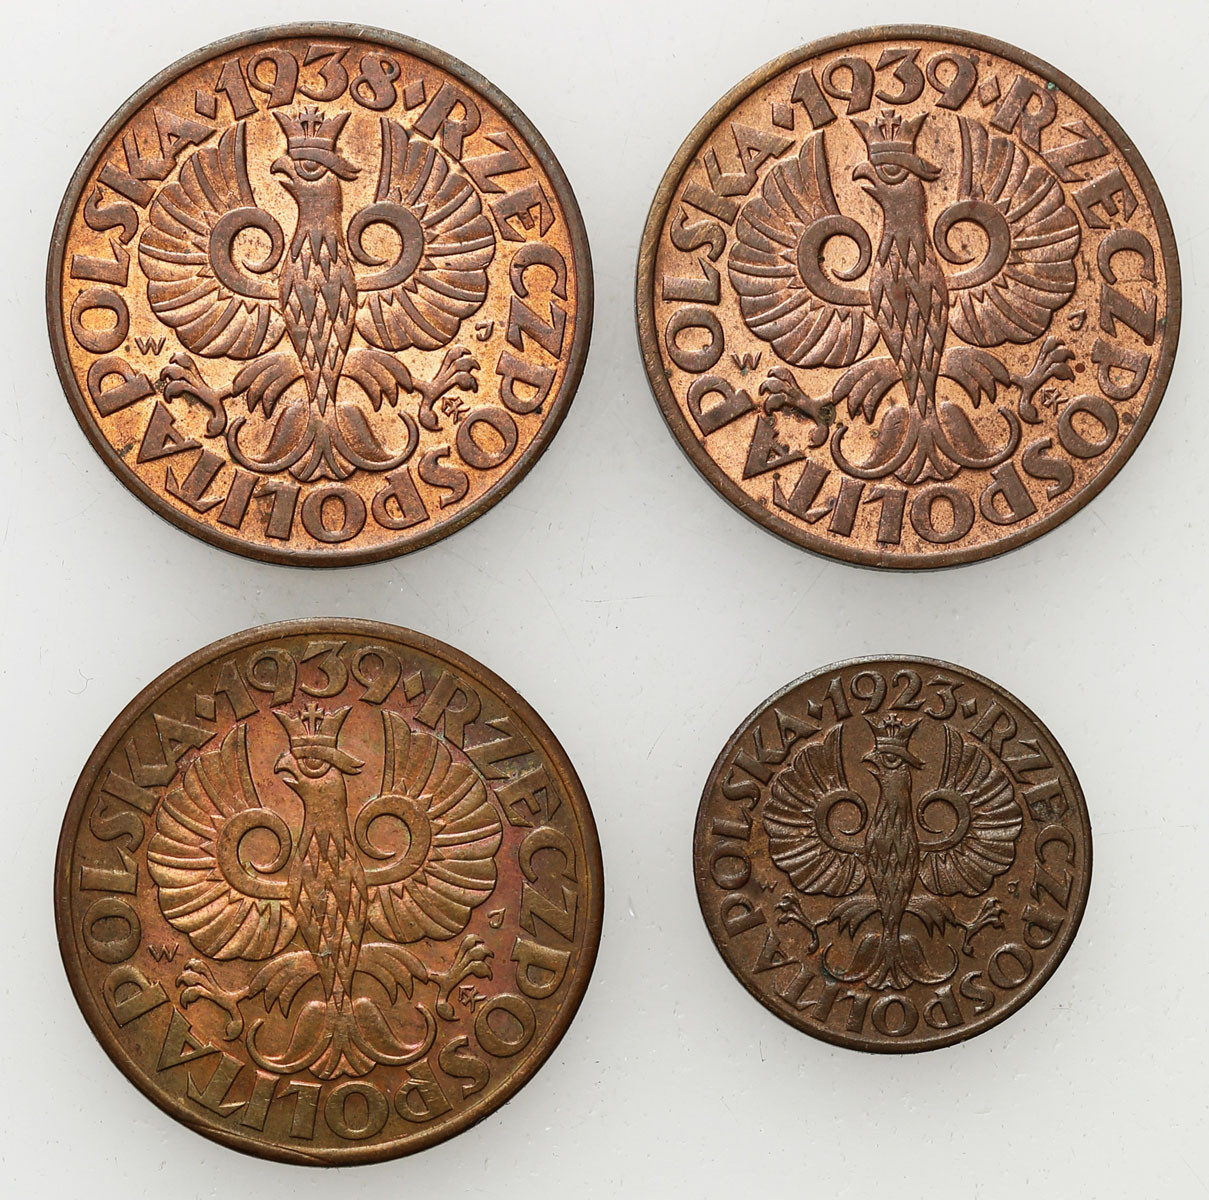 II RP. 1, 5 groszy 1923-1923, zestaw 4 monet